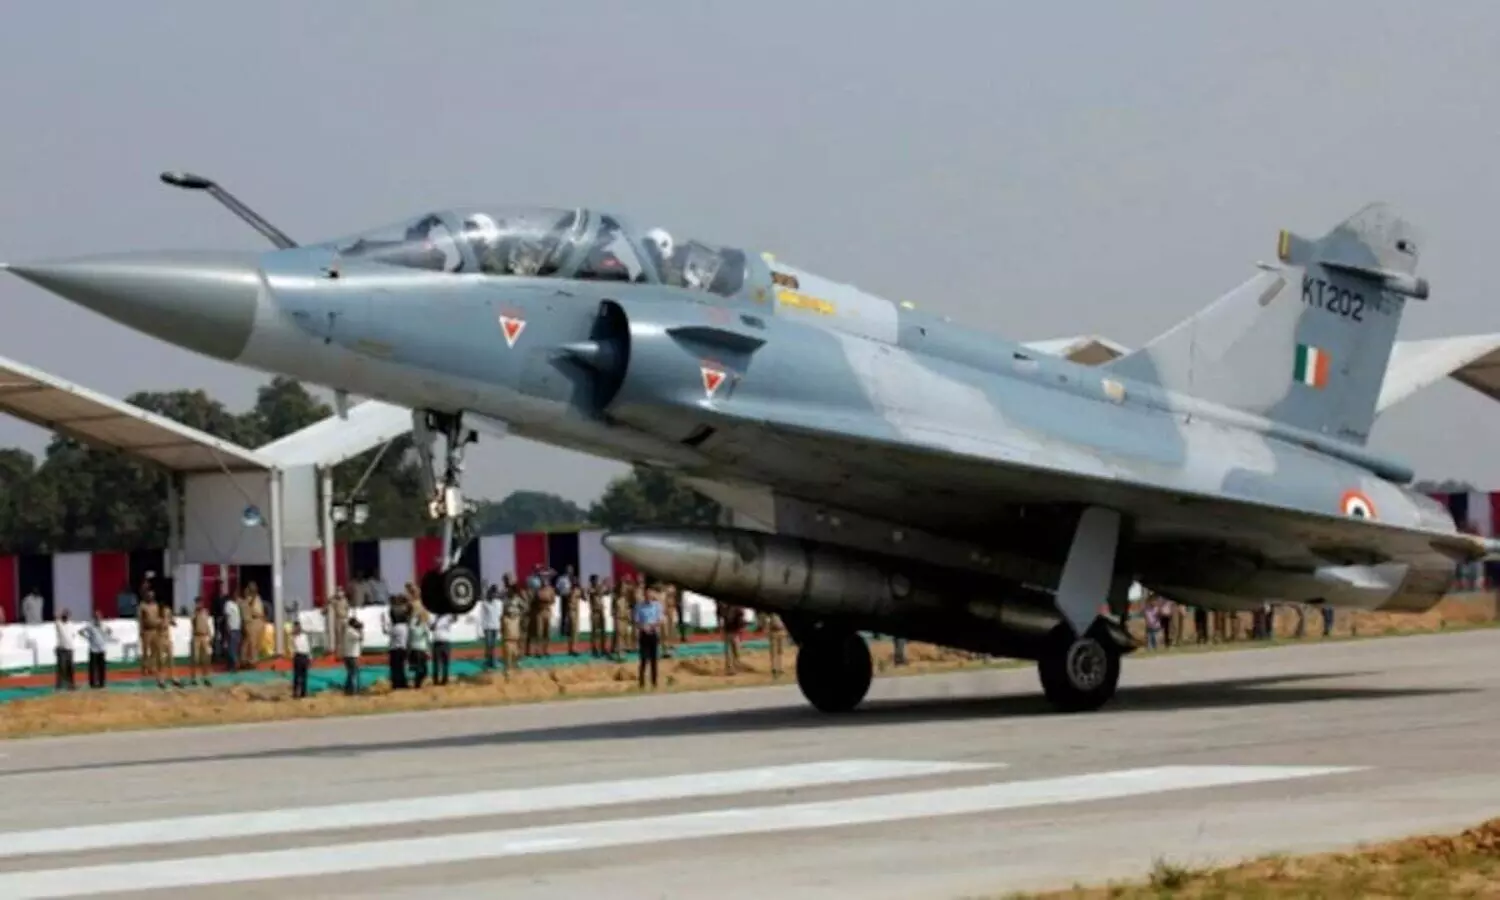 Mirage 2000 crashed